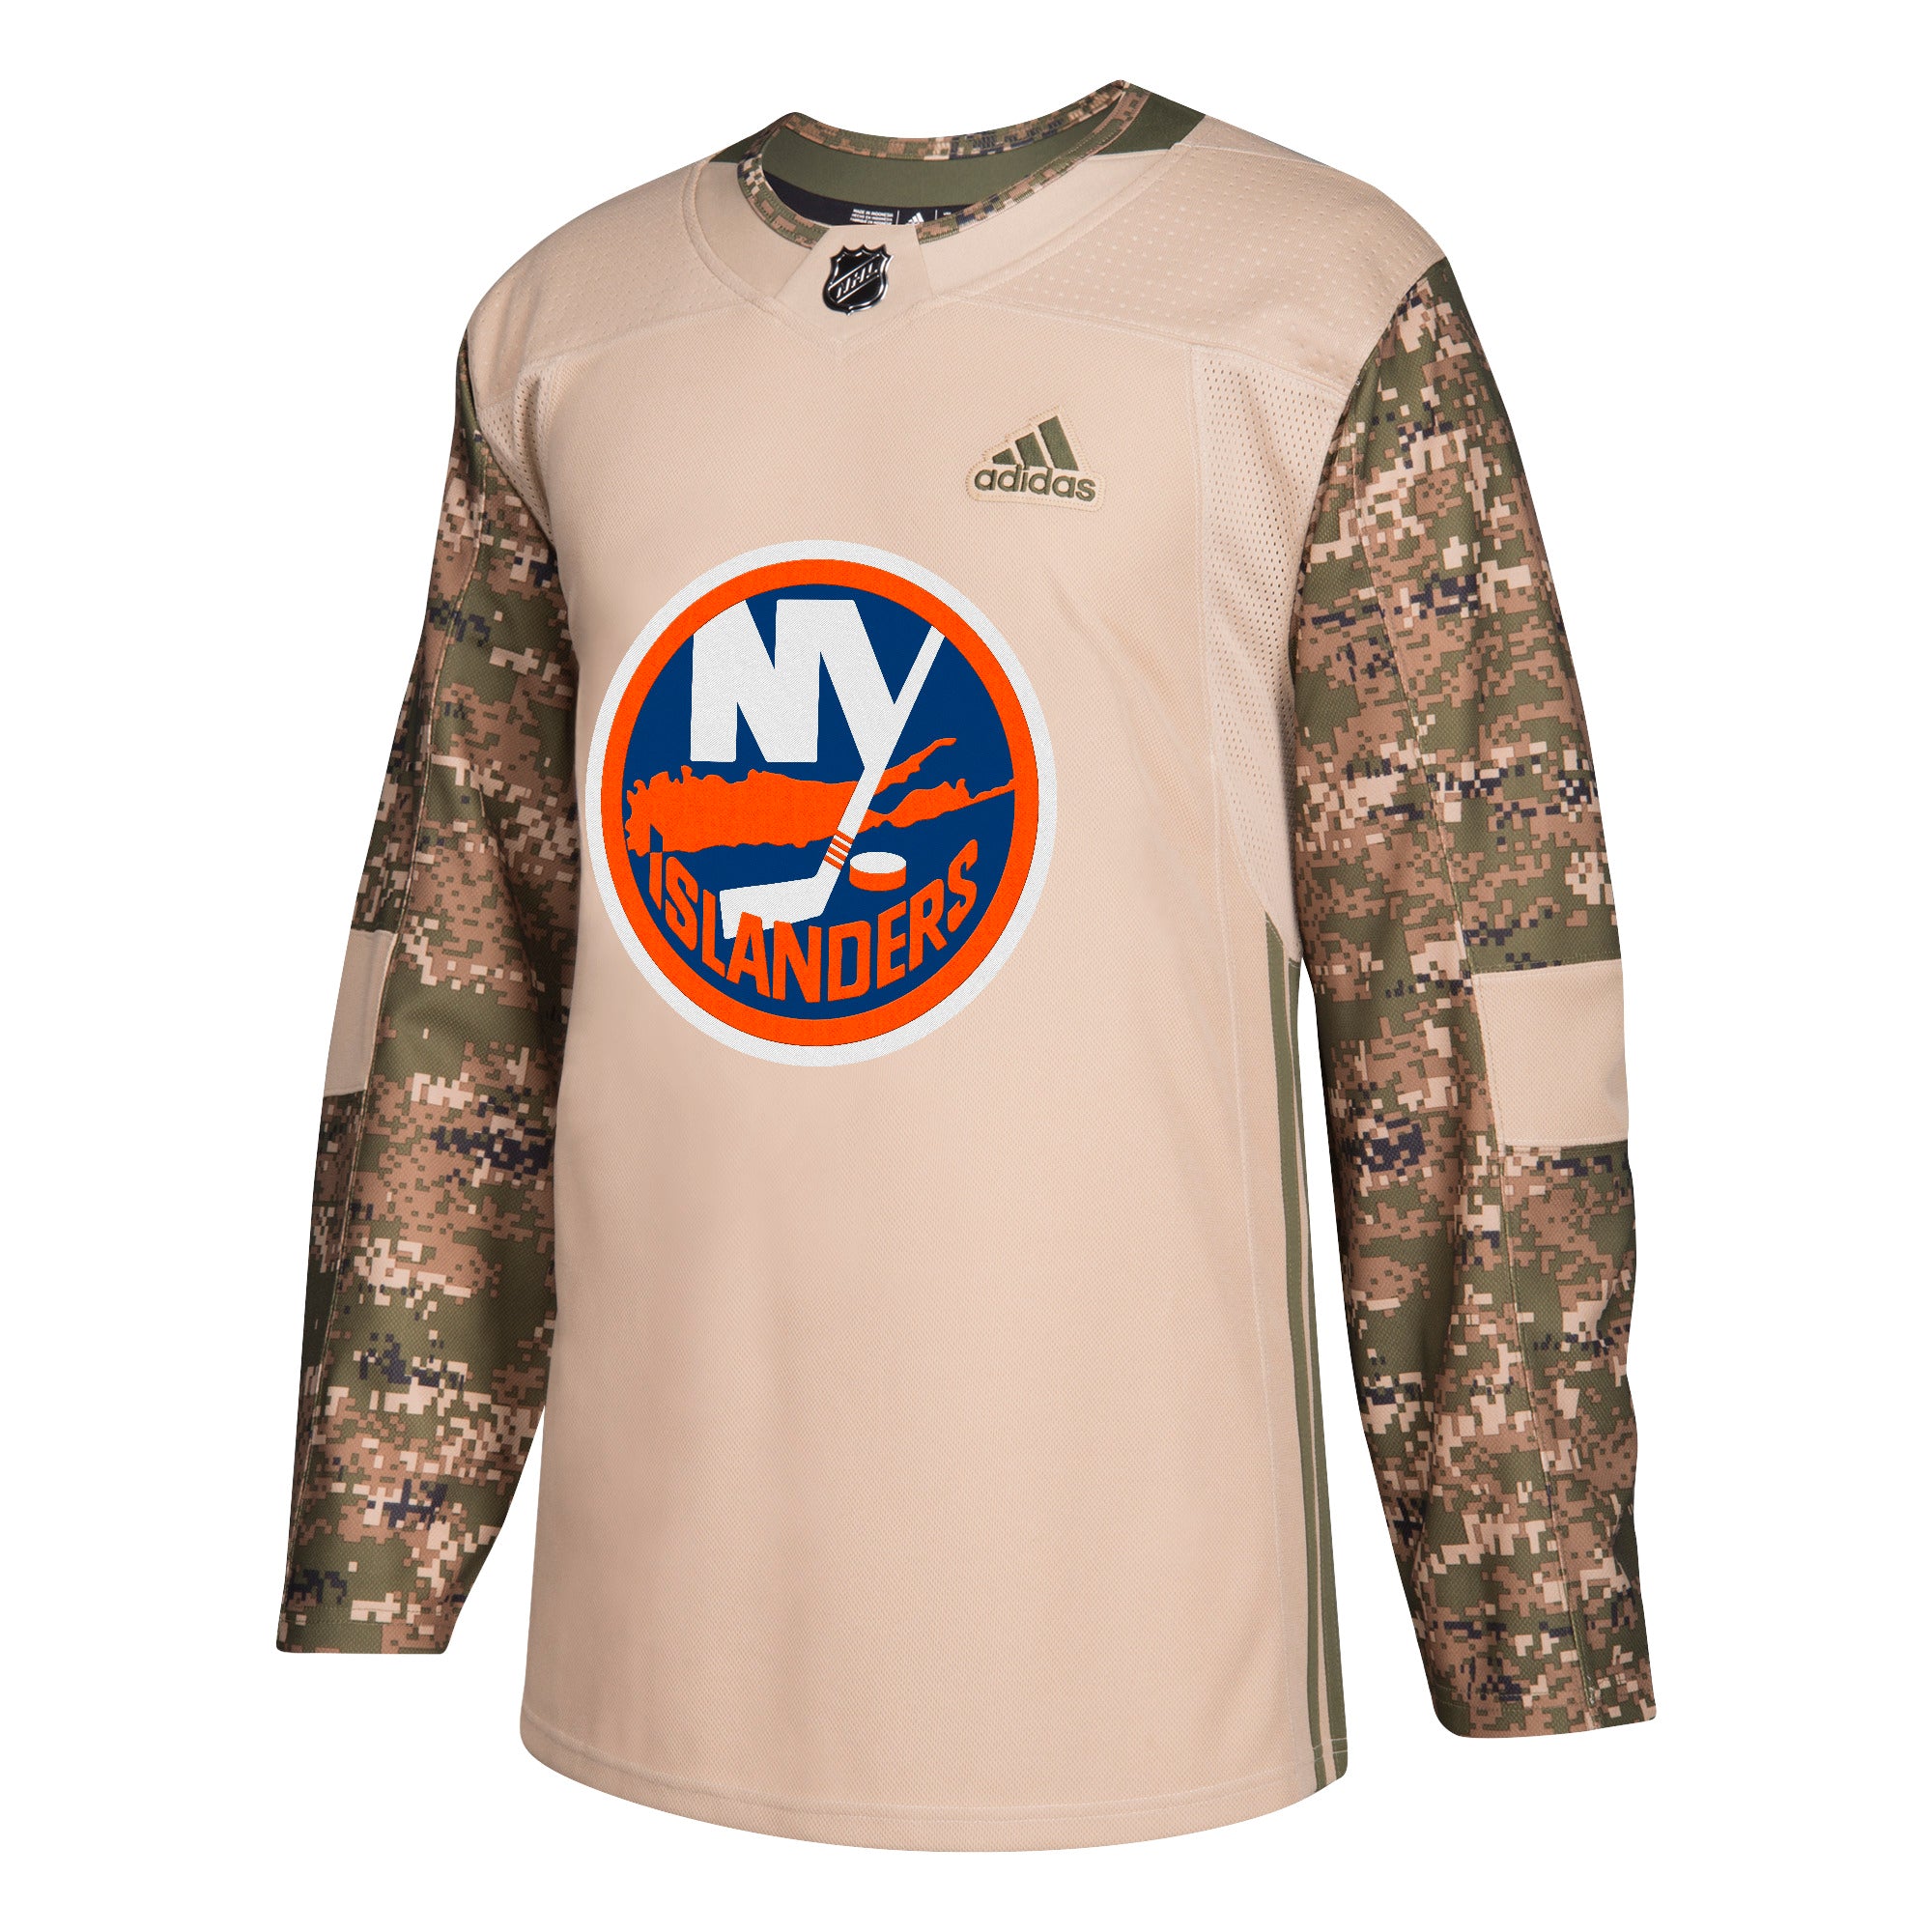 New York Islanders Gear, Islanders Jerseys, NY Pro Shop, NY